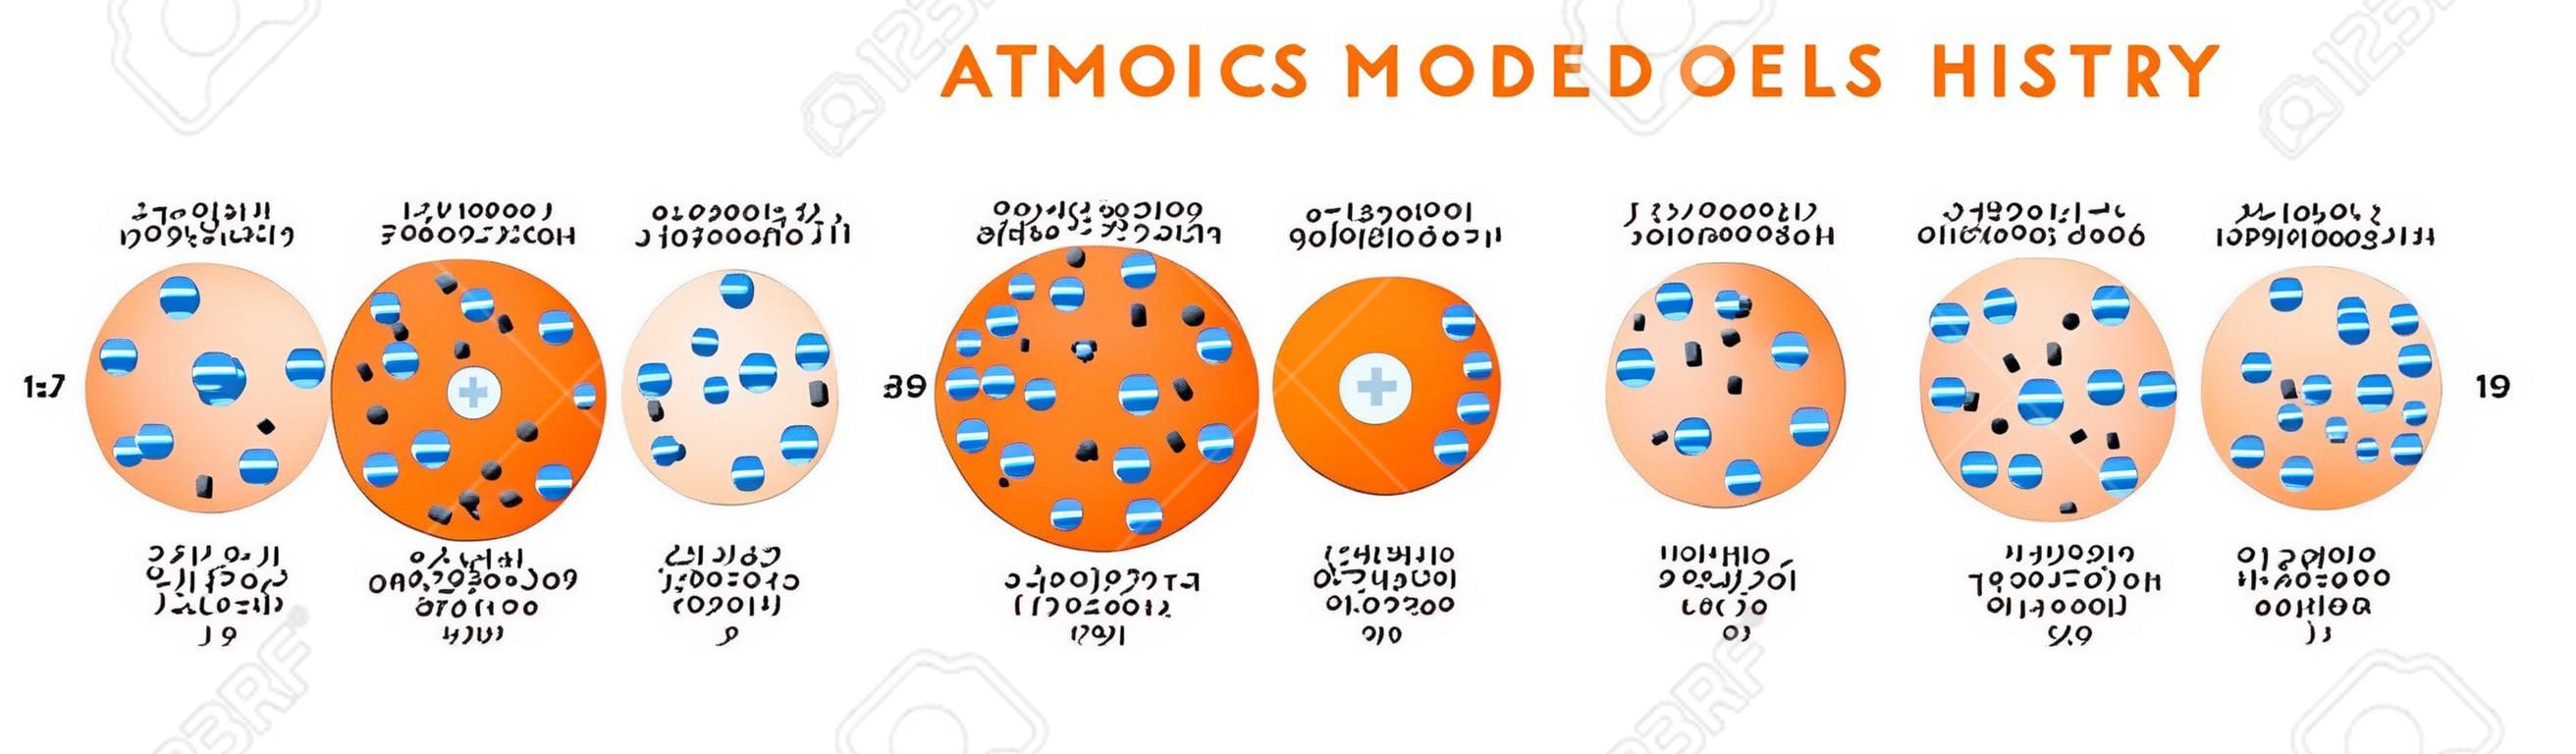 Atomic Models History Infographic Diagram inclusief Democritus Dalton Tomson Rutherford Bohr Schrodinger atoomstructuren voor scheikunde onderwijs poster vector